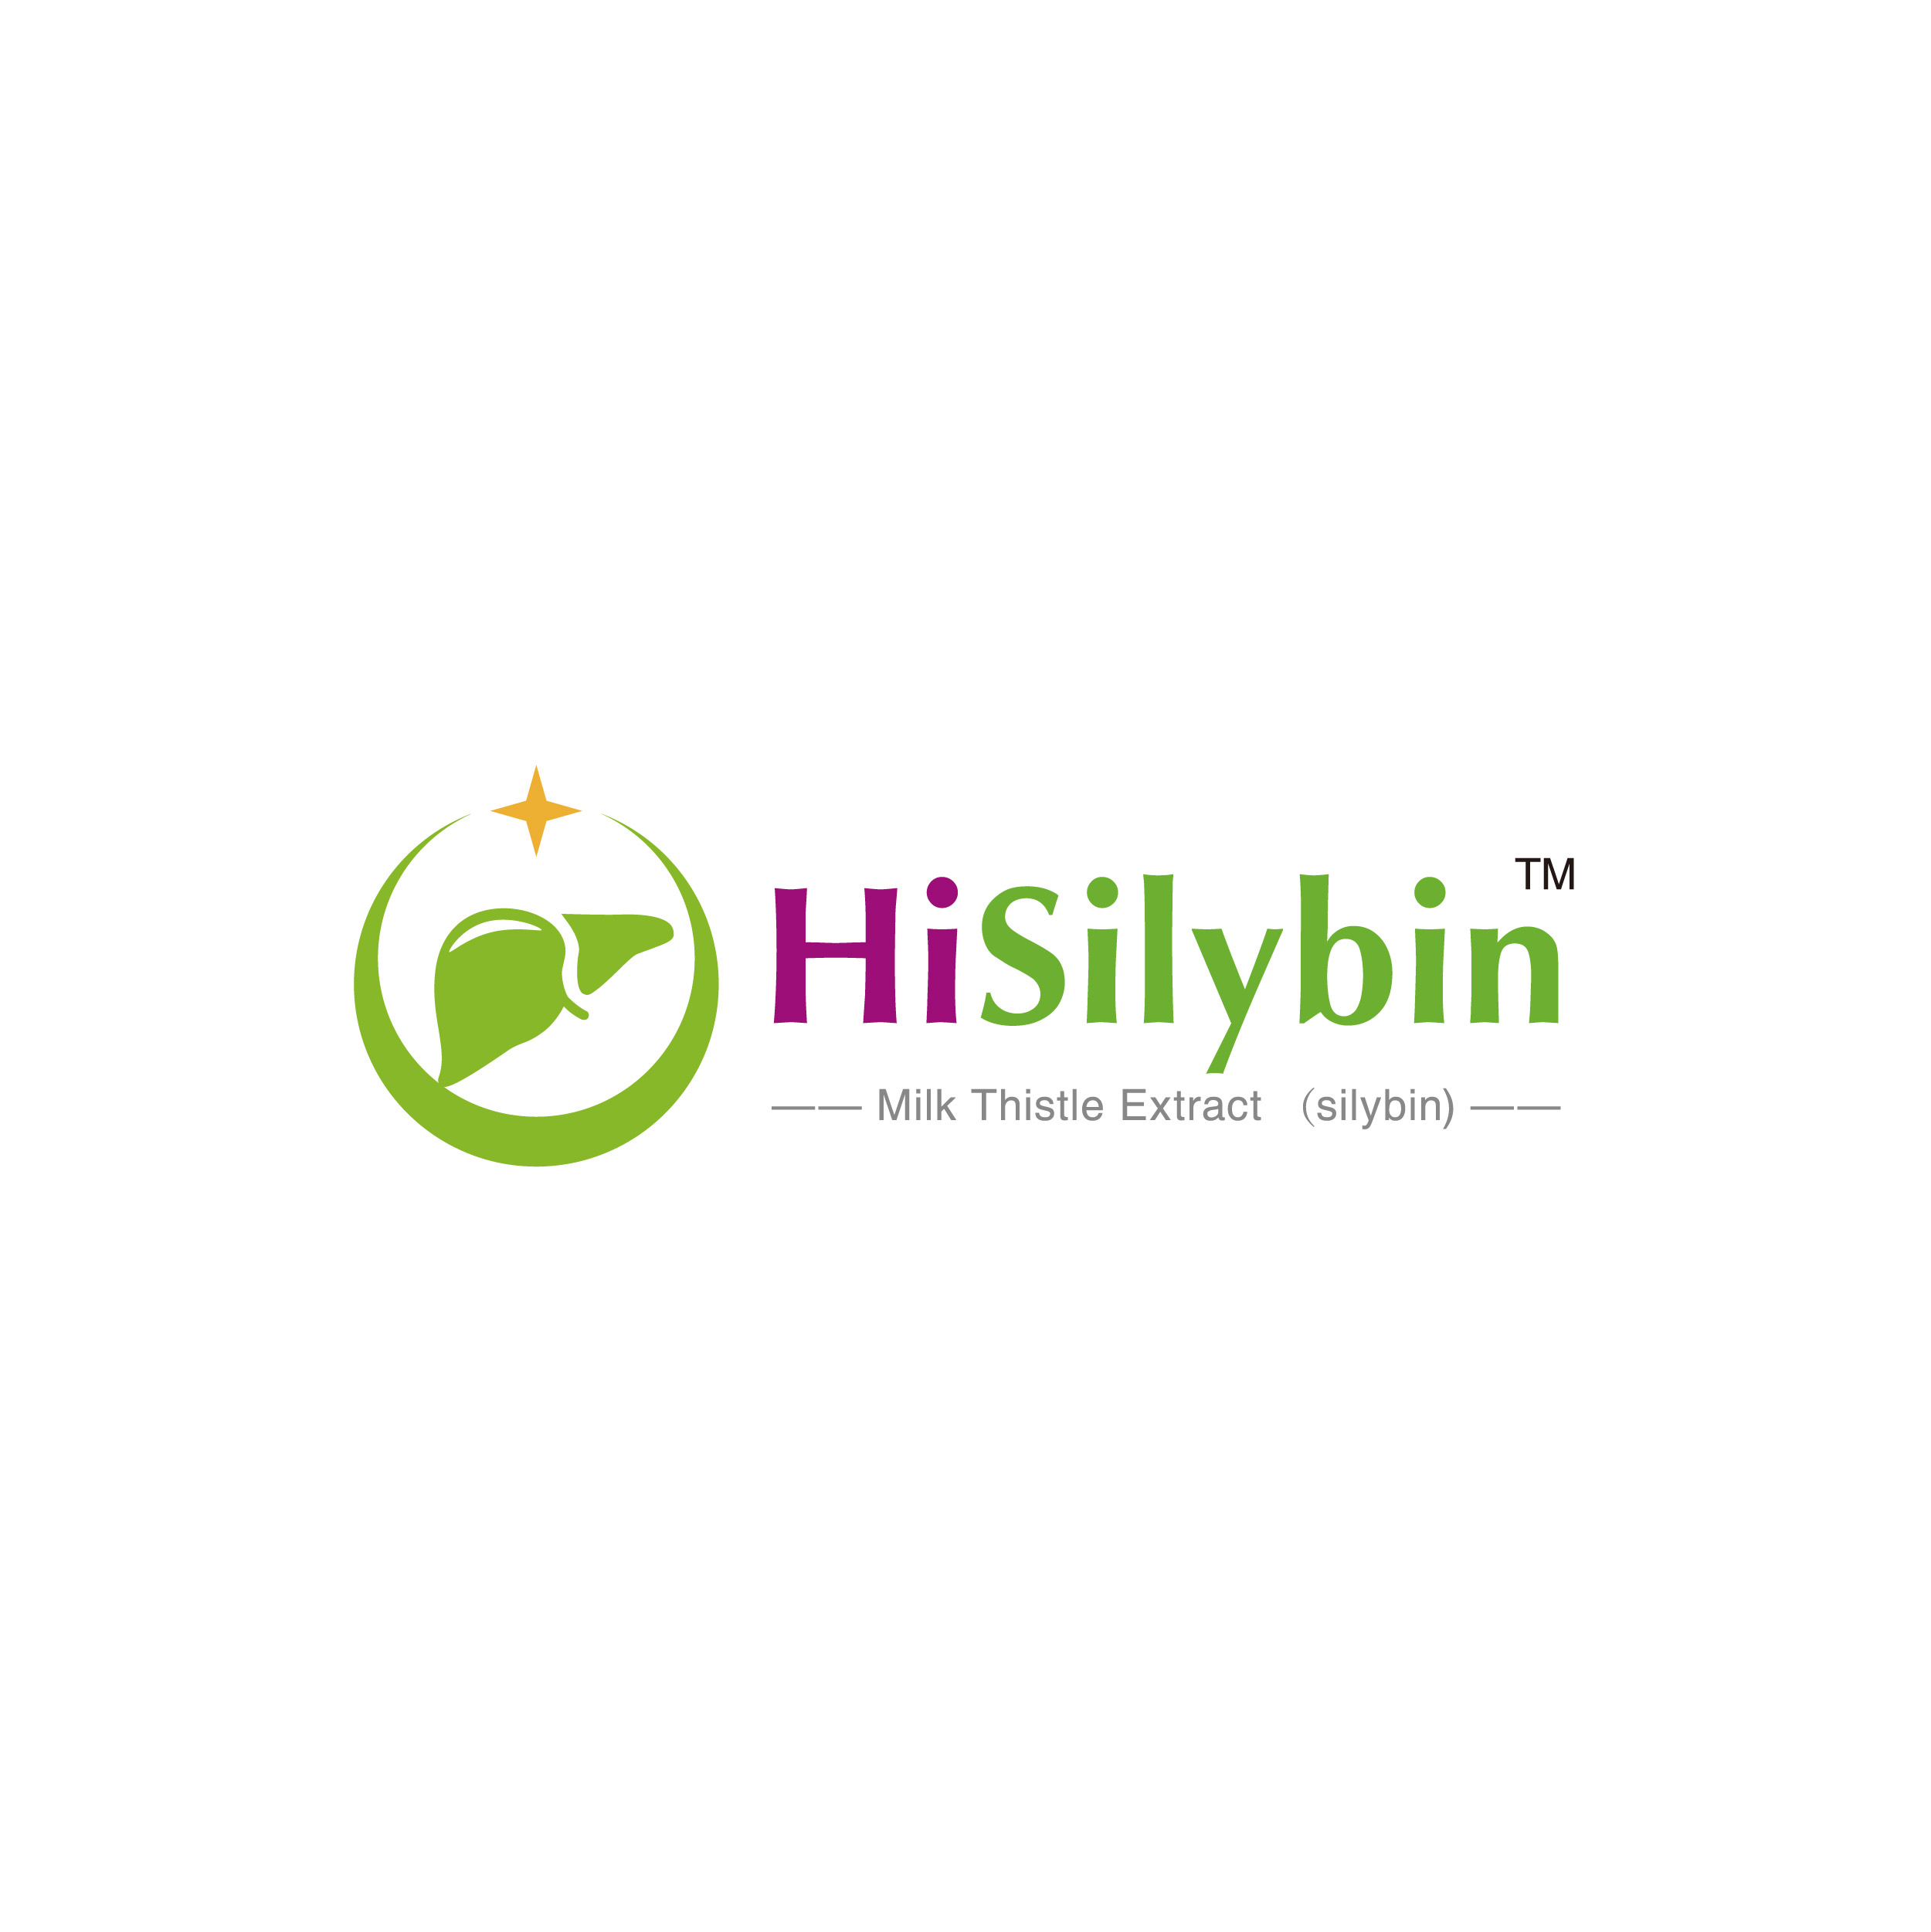 HiSilybin